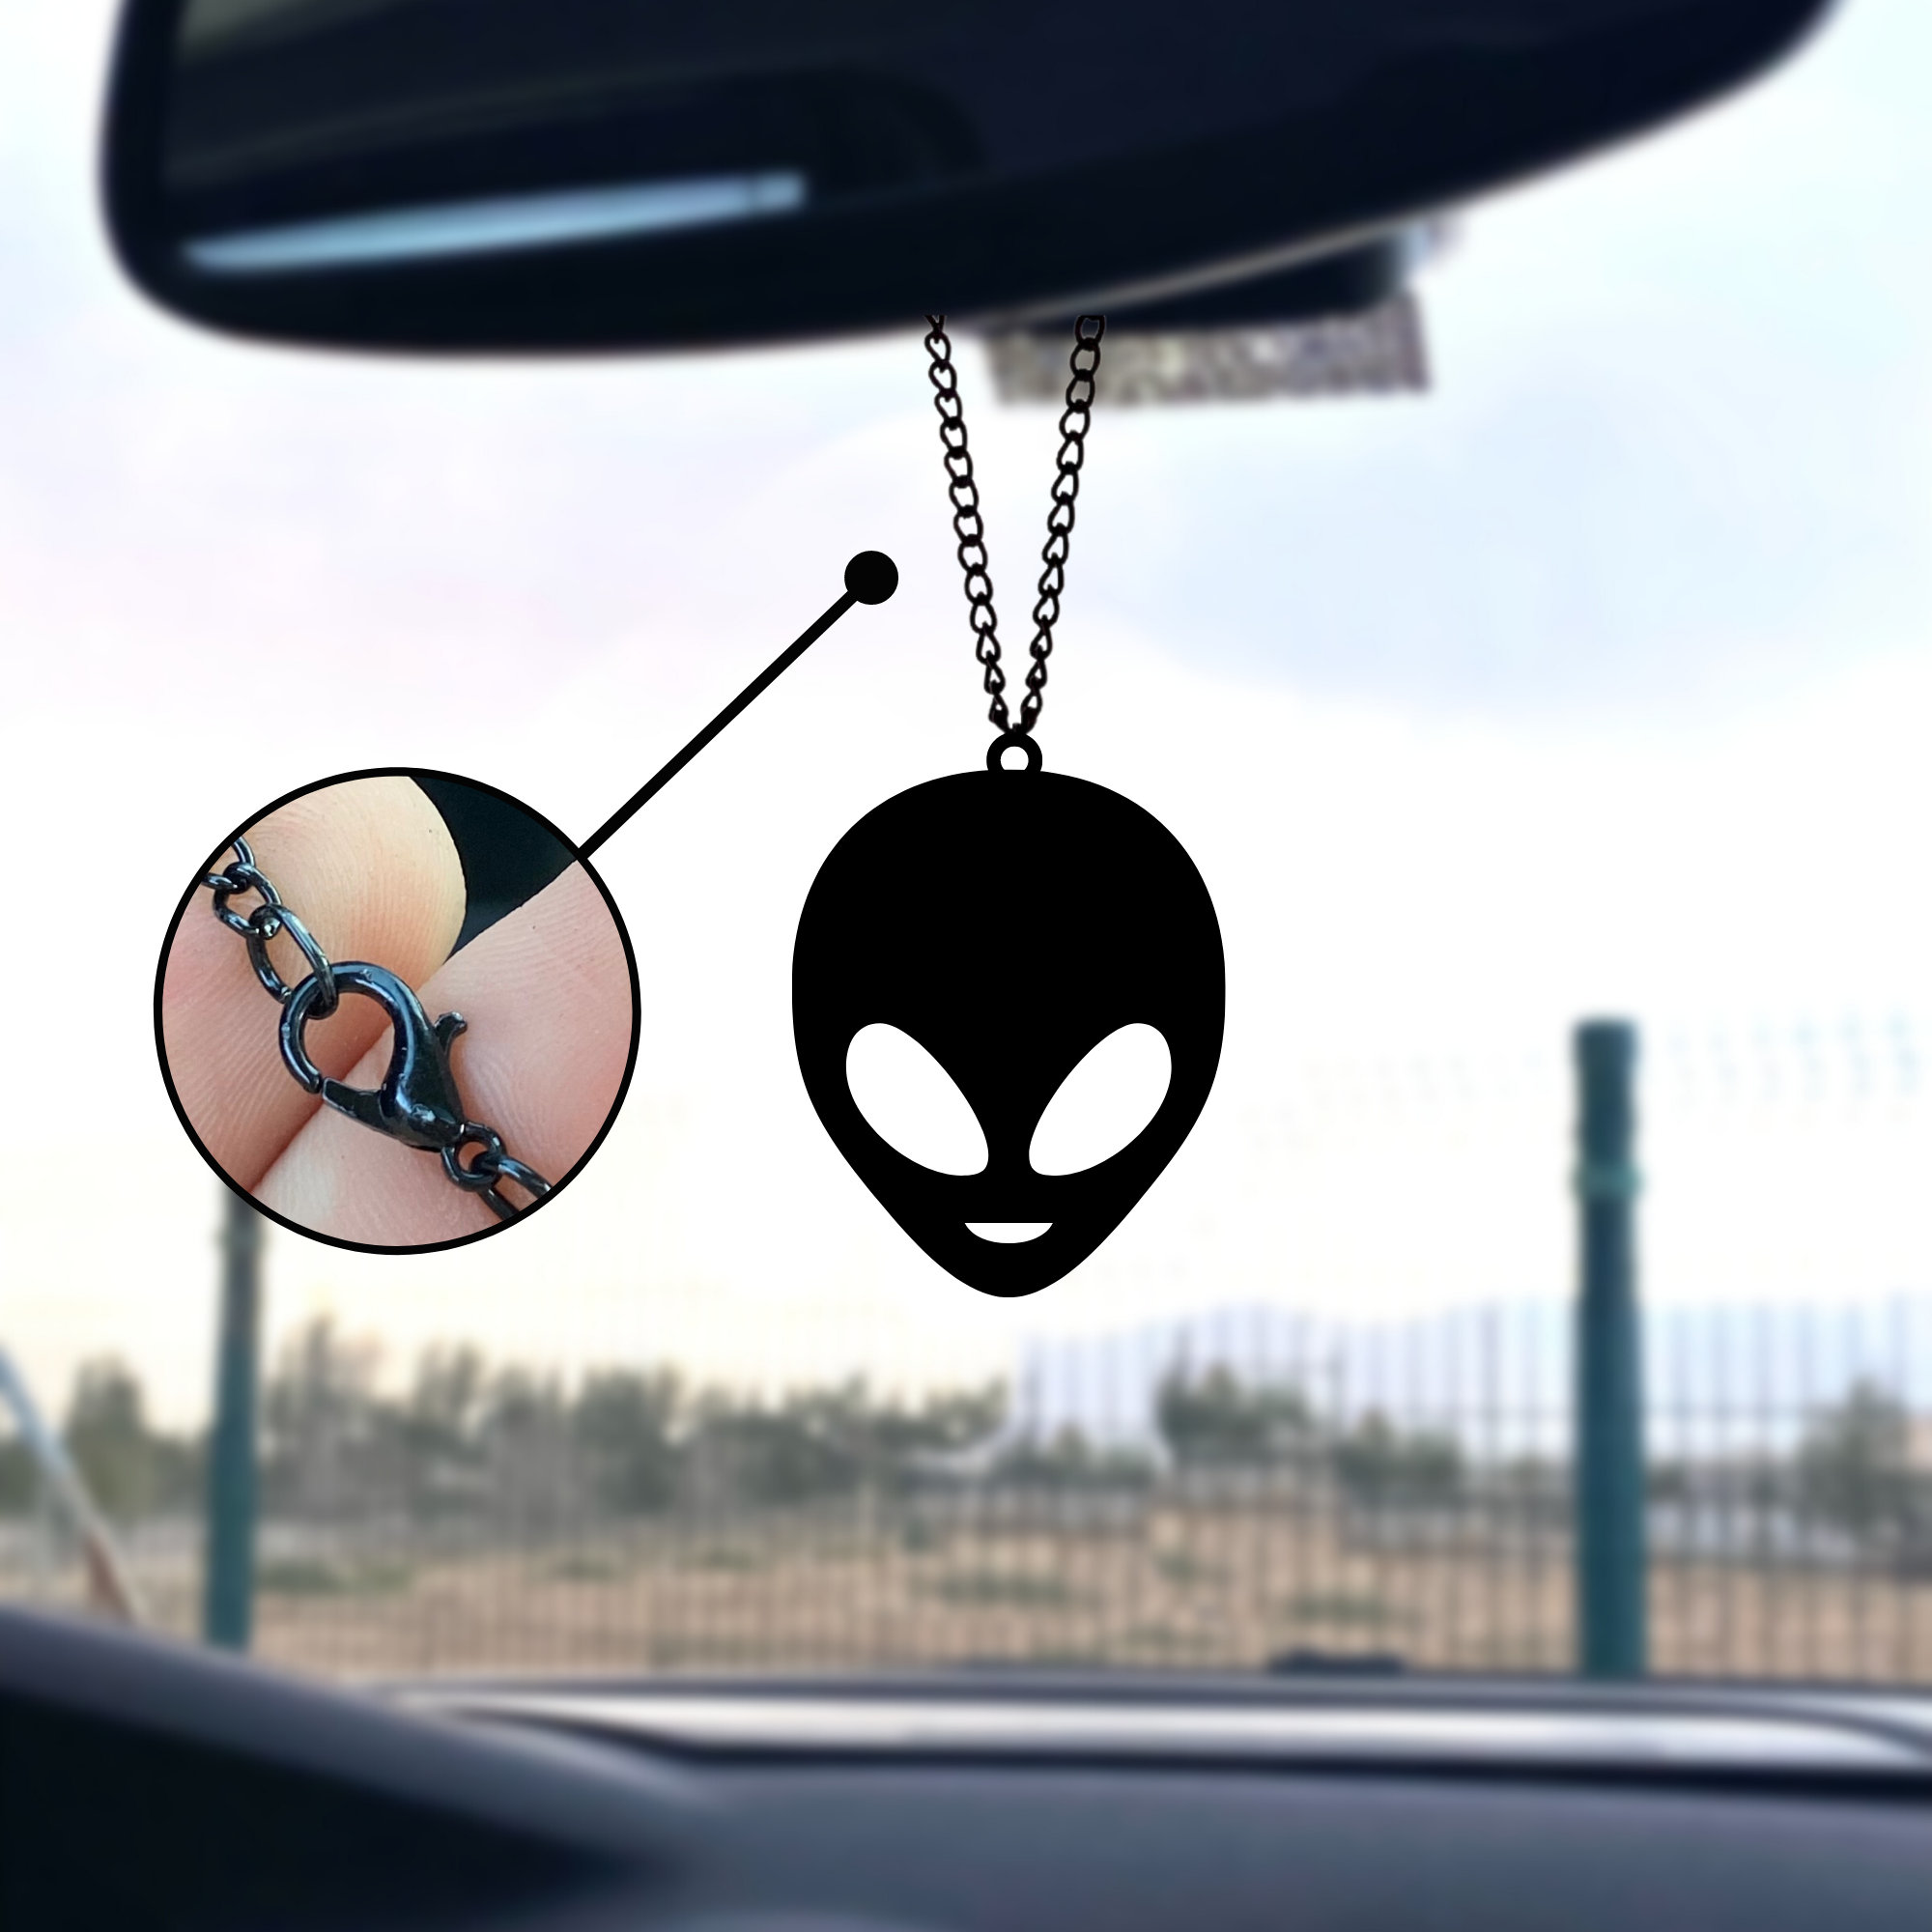 Alien Auto Spiegel Ornament, Alien Auto Zubehör, Schwarzer Auto